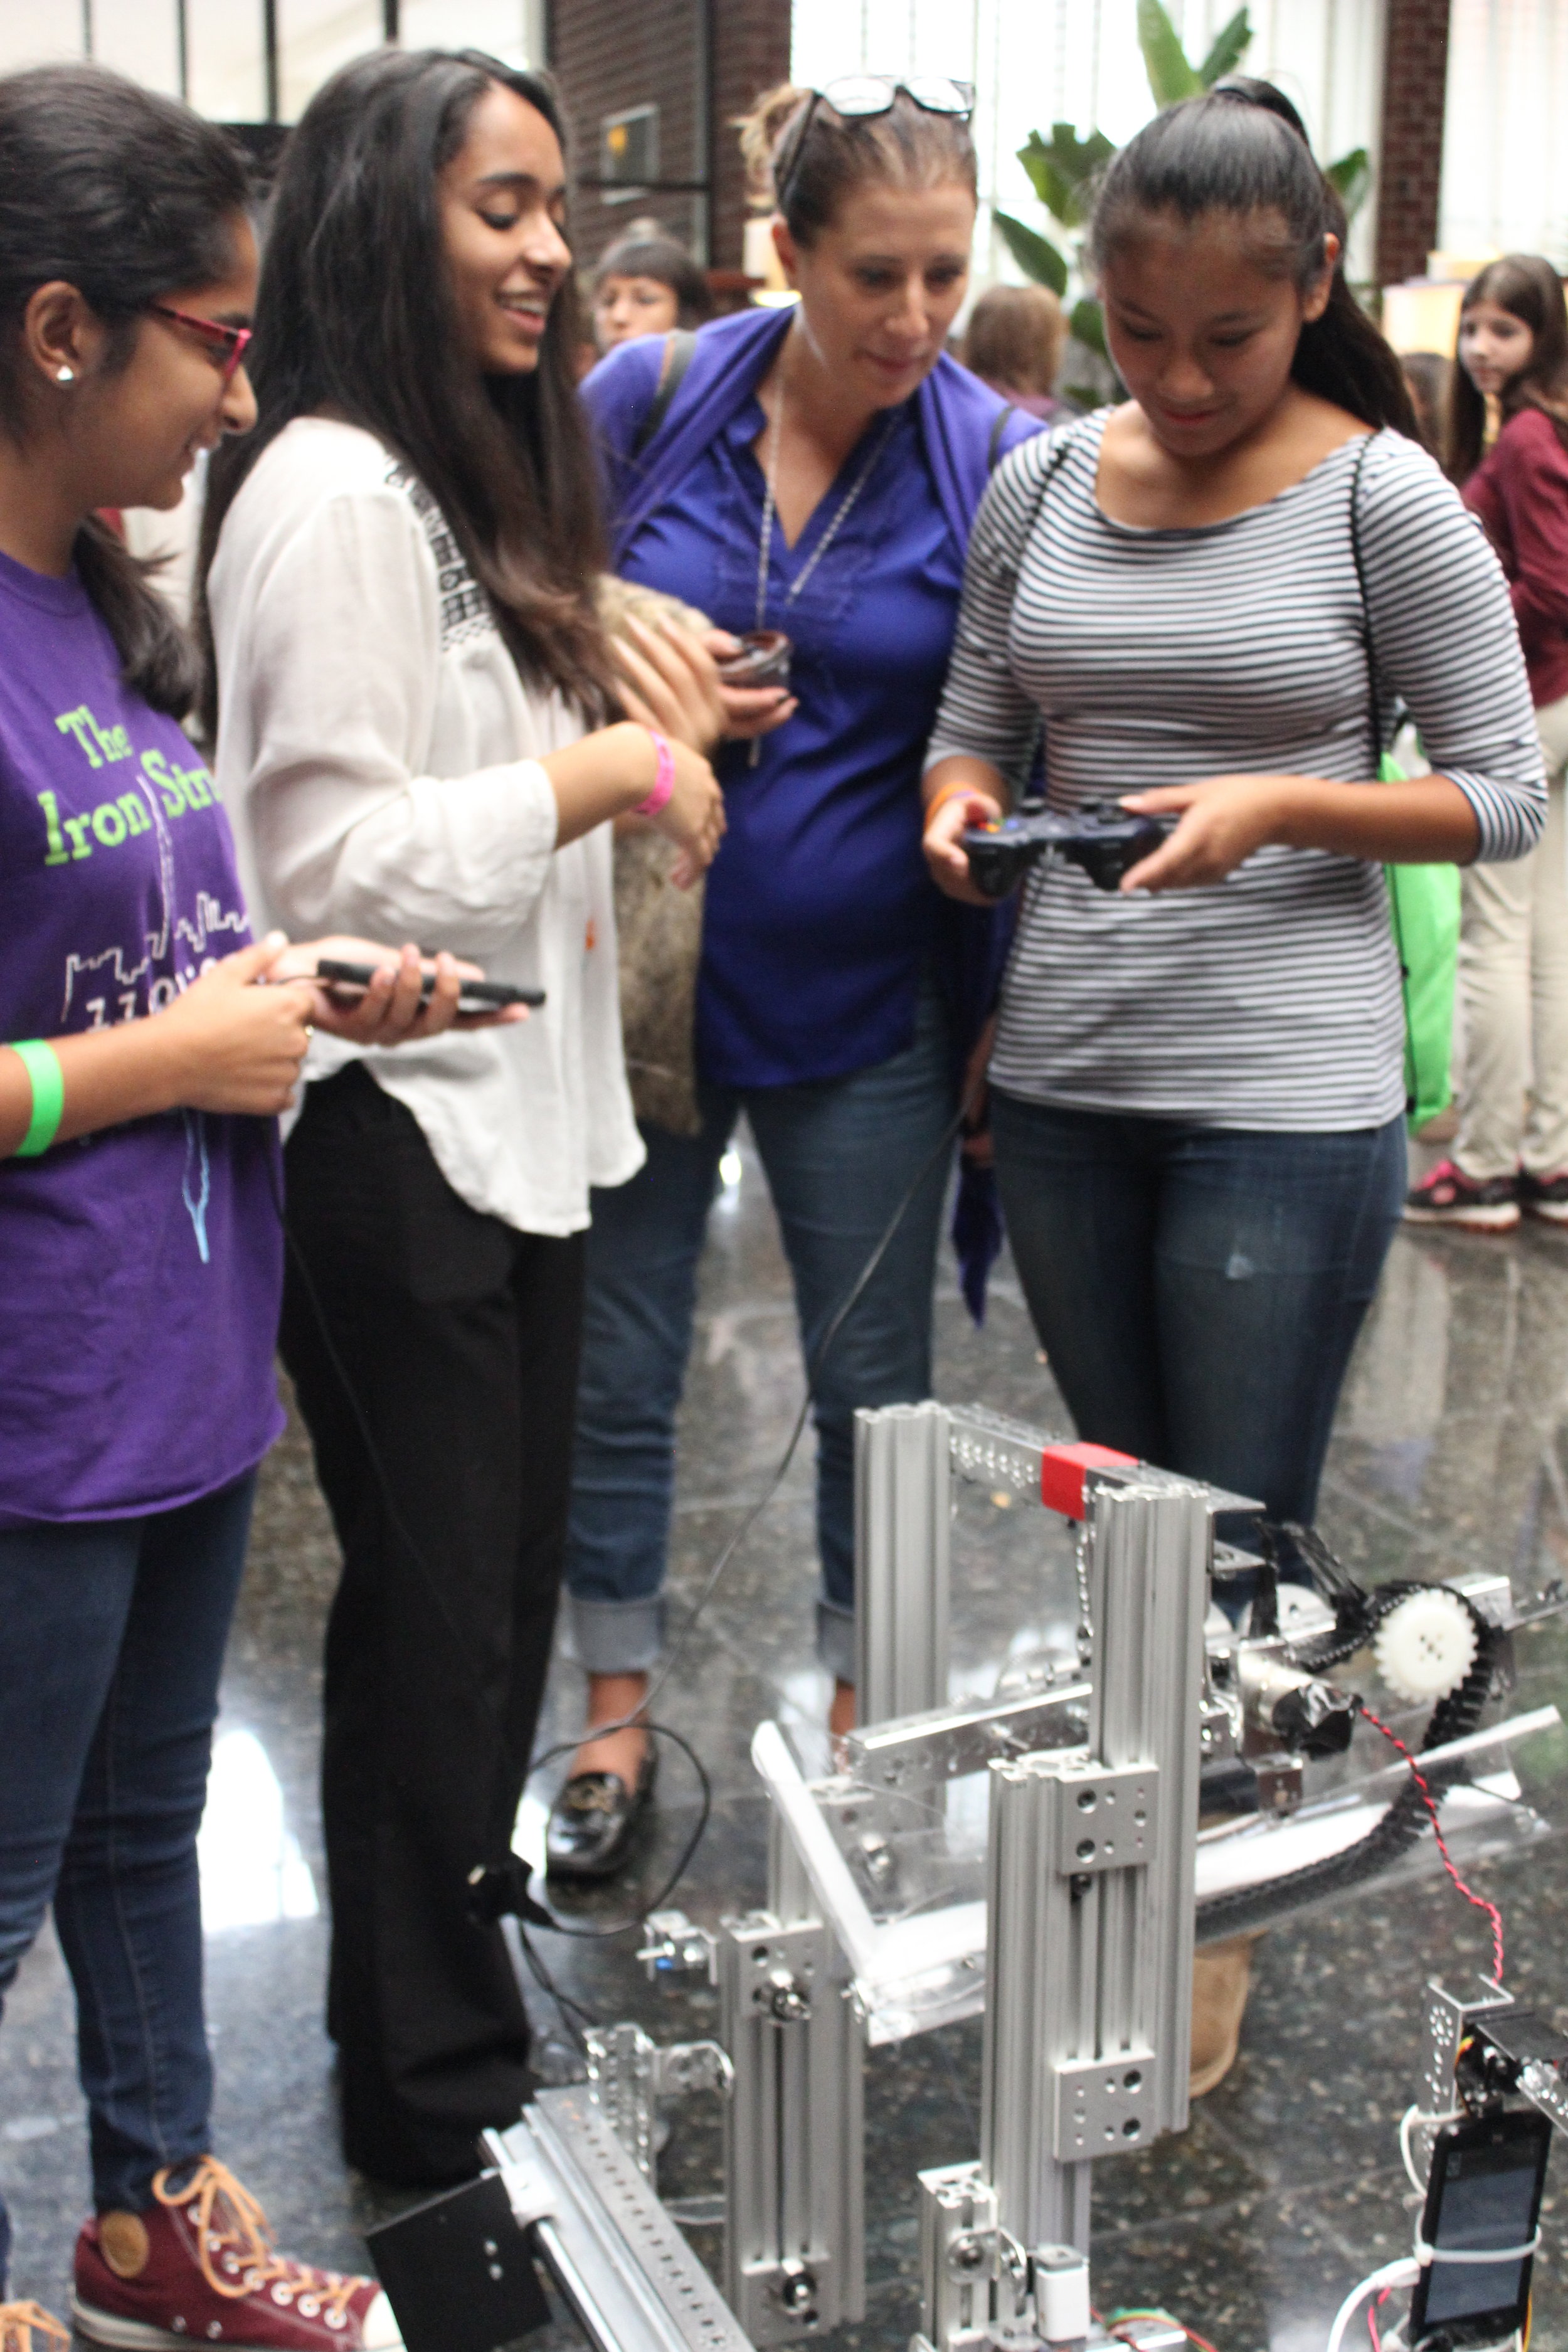  Sarah and Susan help girls drive the robot. Girls World Expo, October 2016. 